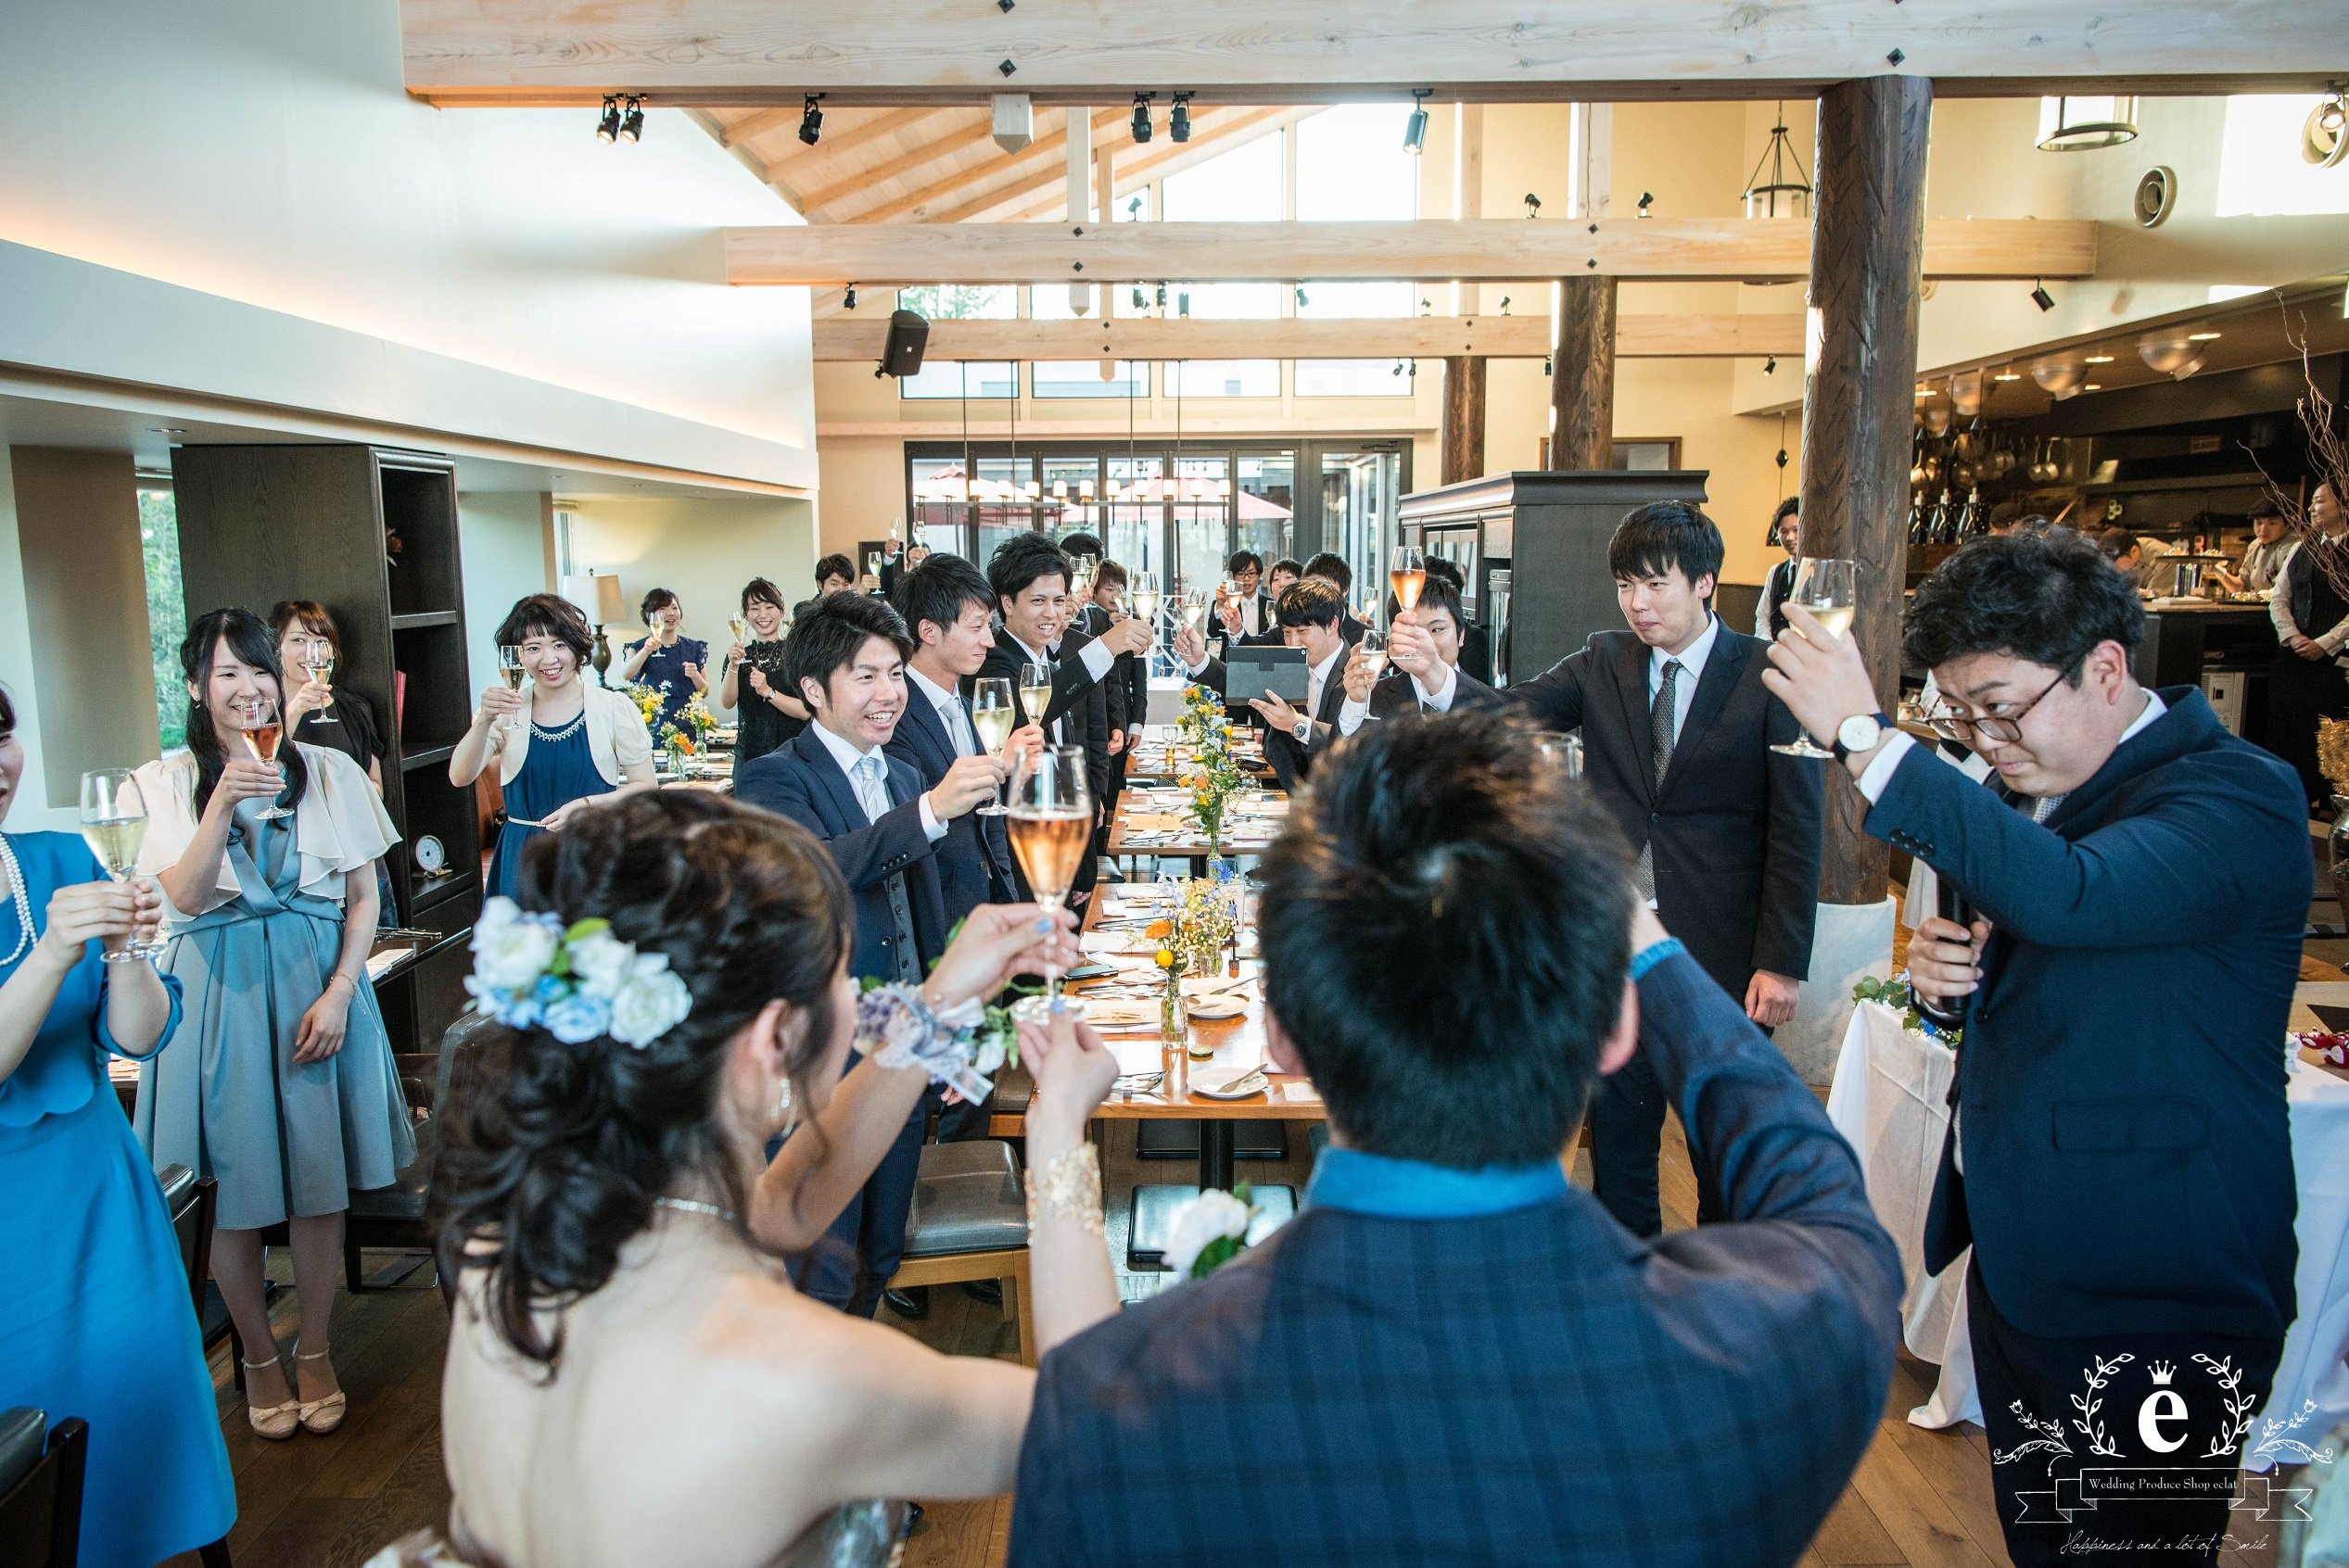 水戸-茨城-つくば-結婚式-COLK-ウェディングパーティー-レストラン-1.5次会-会費-エクラ-カジュアル-友人-二部制